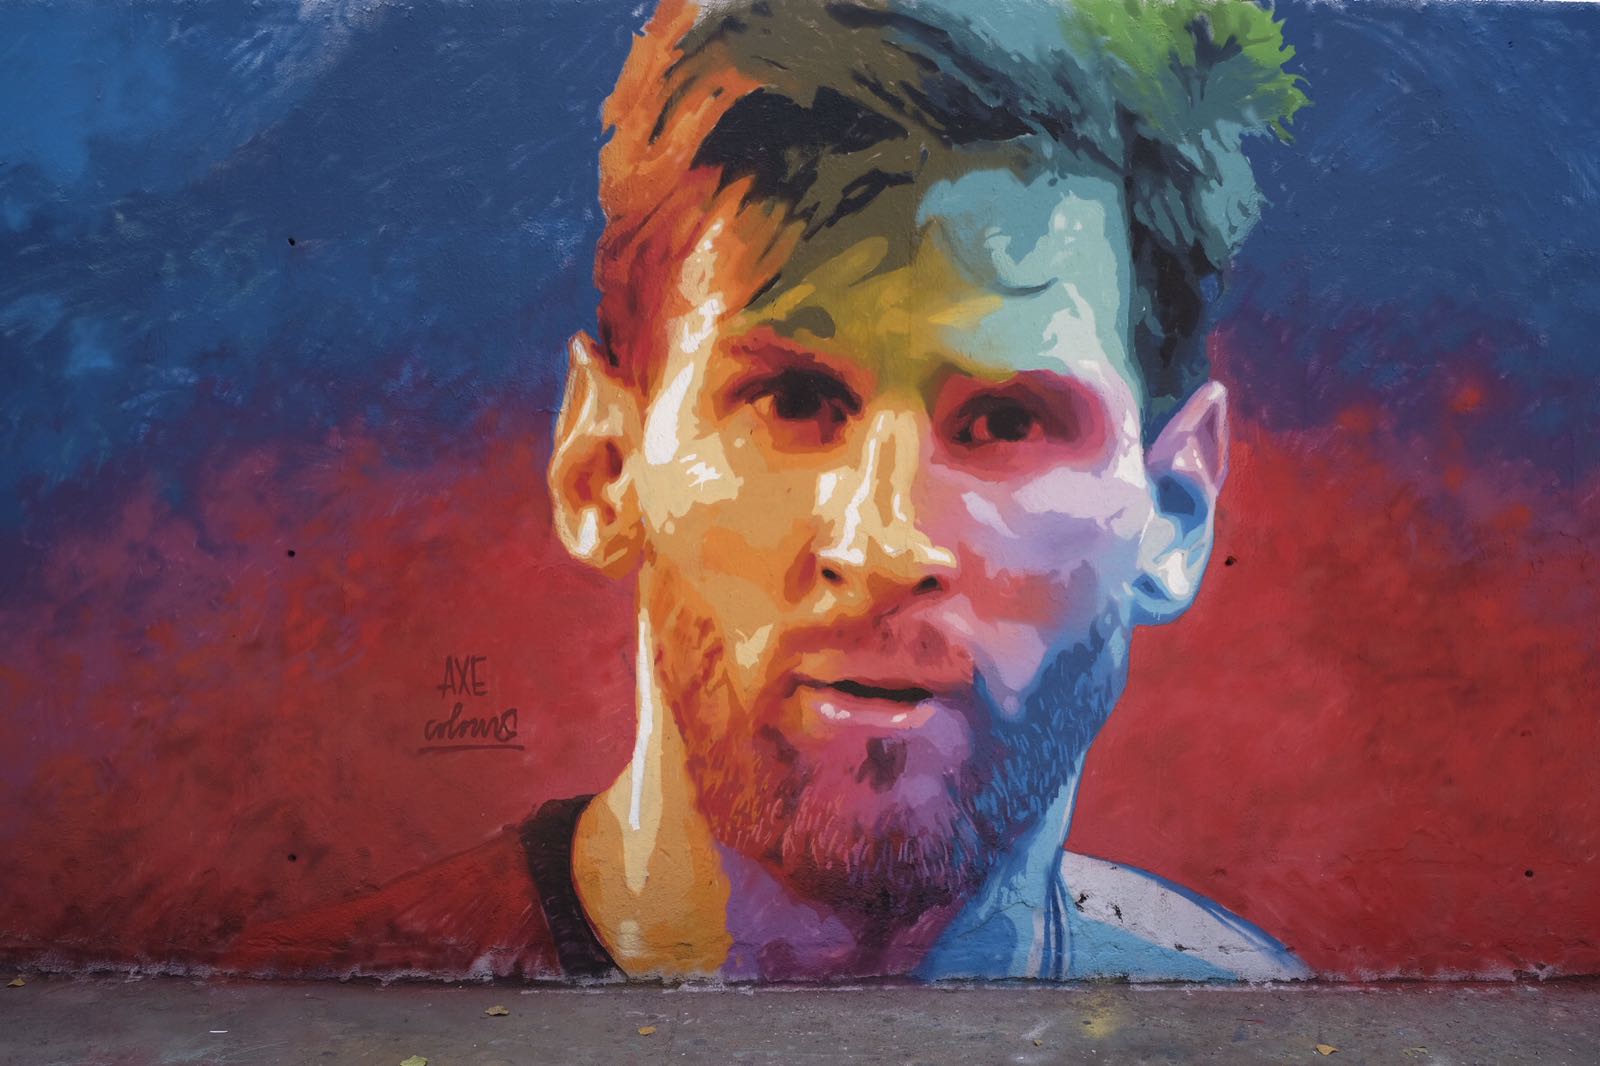 Barcelona se despierta con un grafiti gigante de Leo Messi